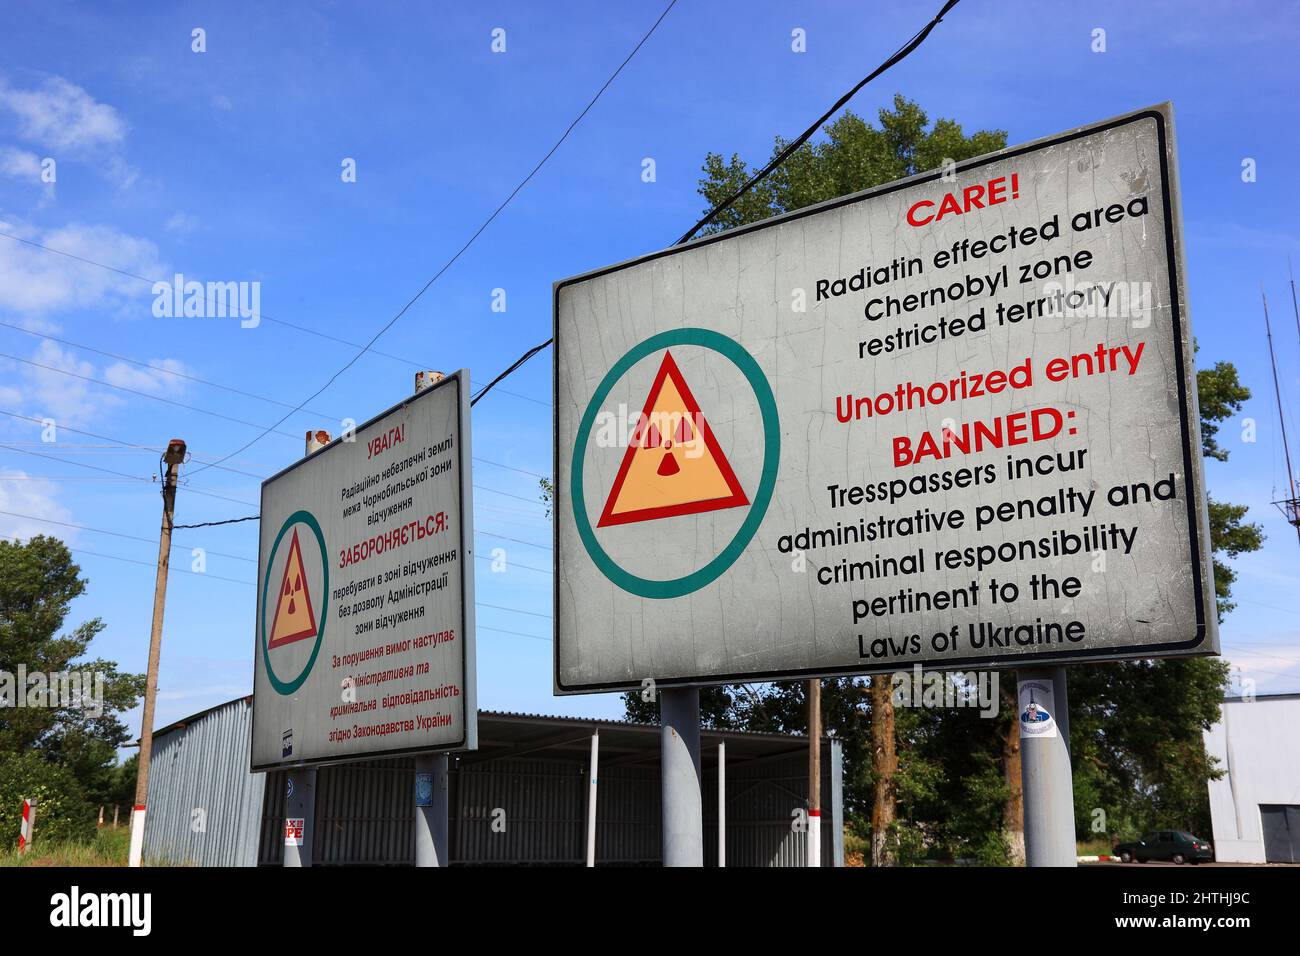 Ukraine, Sperrzone von Tschernobyl und Pripjat, Hinweisschild auf die verstrahlte Zone, am Kontrollpunkt der Zufahrt Stock Photo